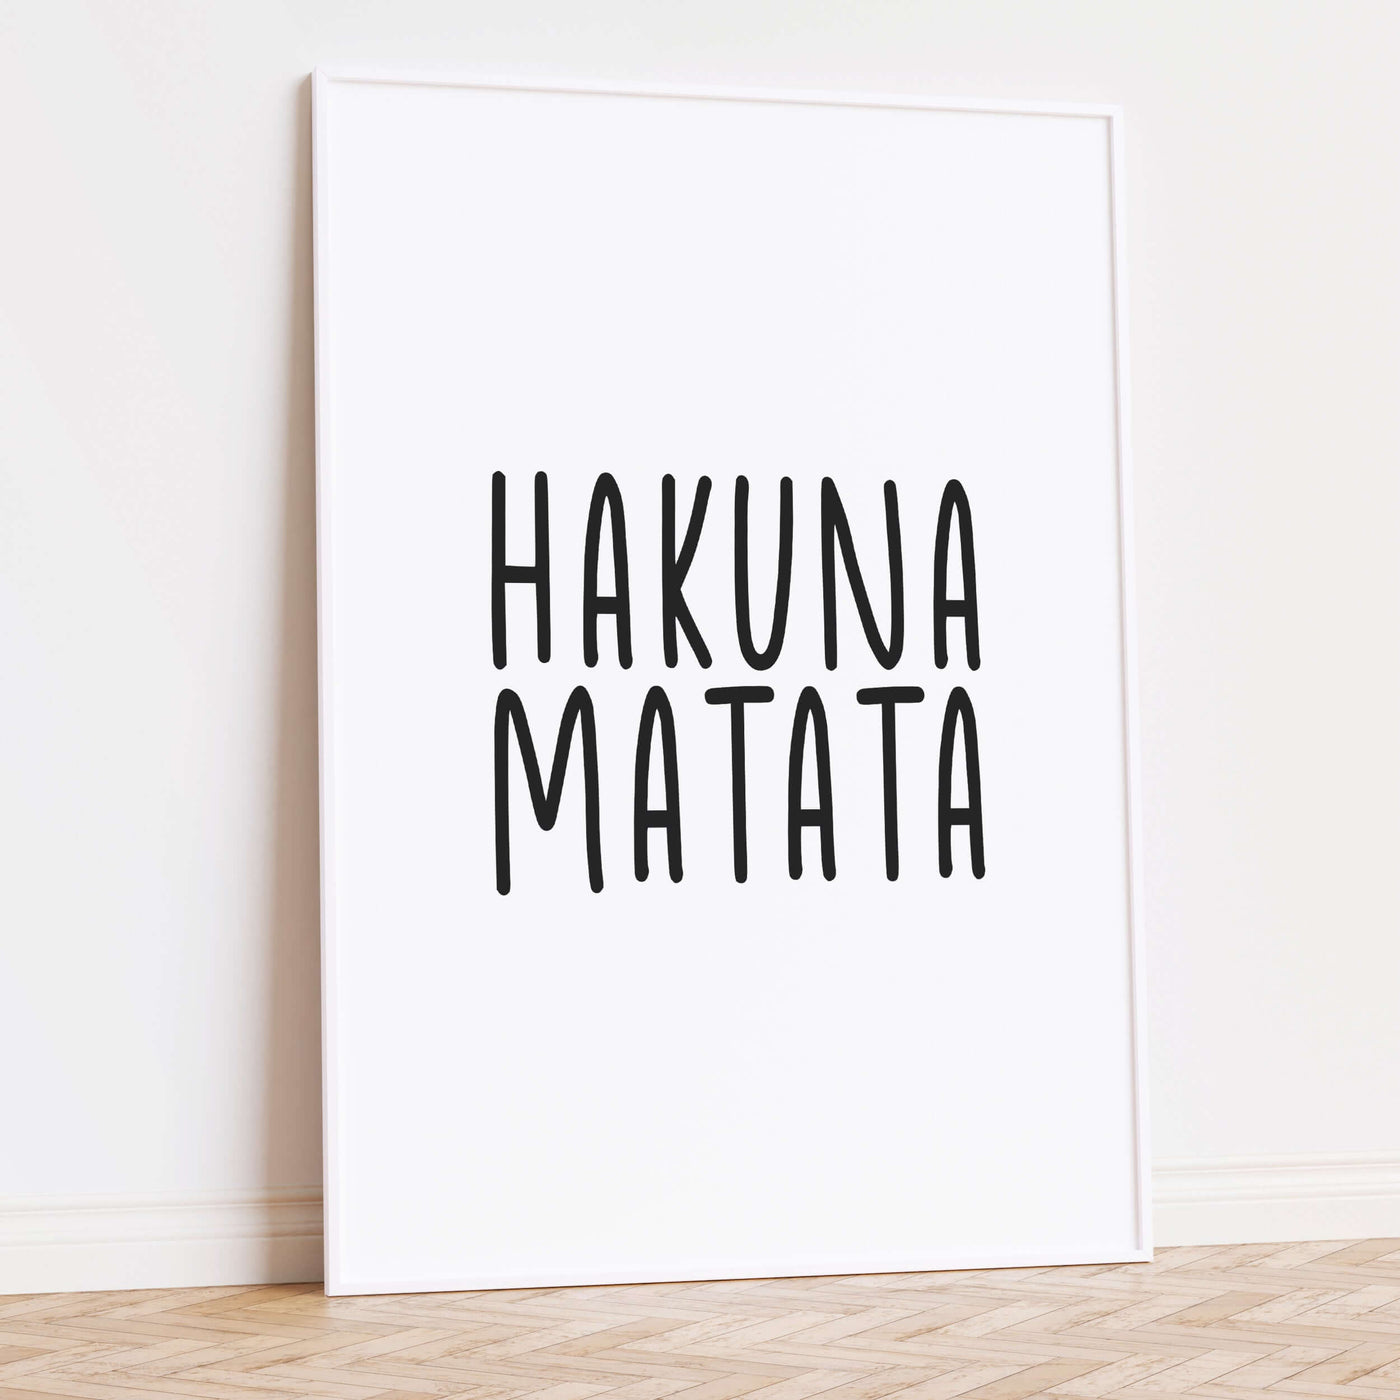 Hakuna Matata Poster BF alt, Kinderposter, schwarz weiß Poster, Sprüche Poster Poster Größe: Digitaler Download, 13x18cm, 21x30cm, 30x40cm, 40x50cm, 50x70cm, 61x91cm famprints